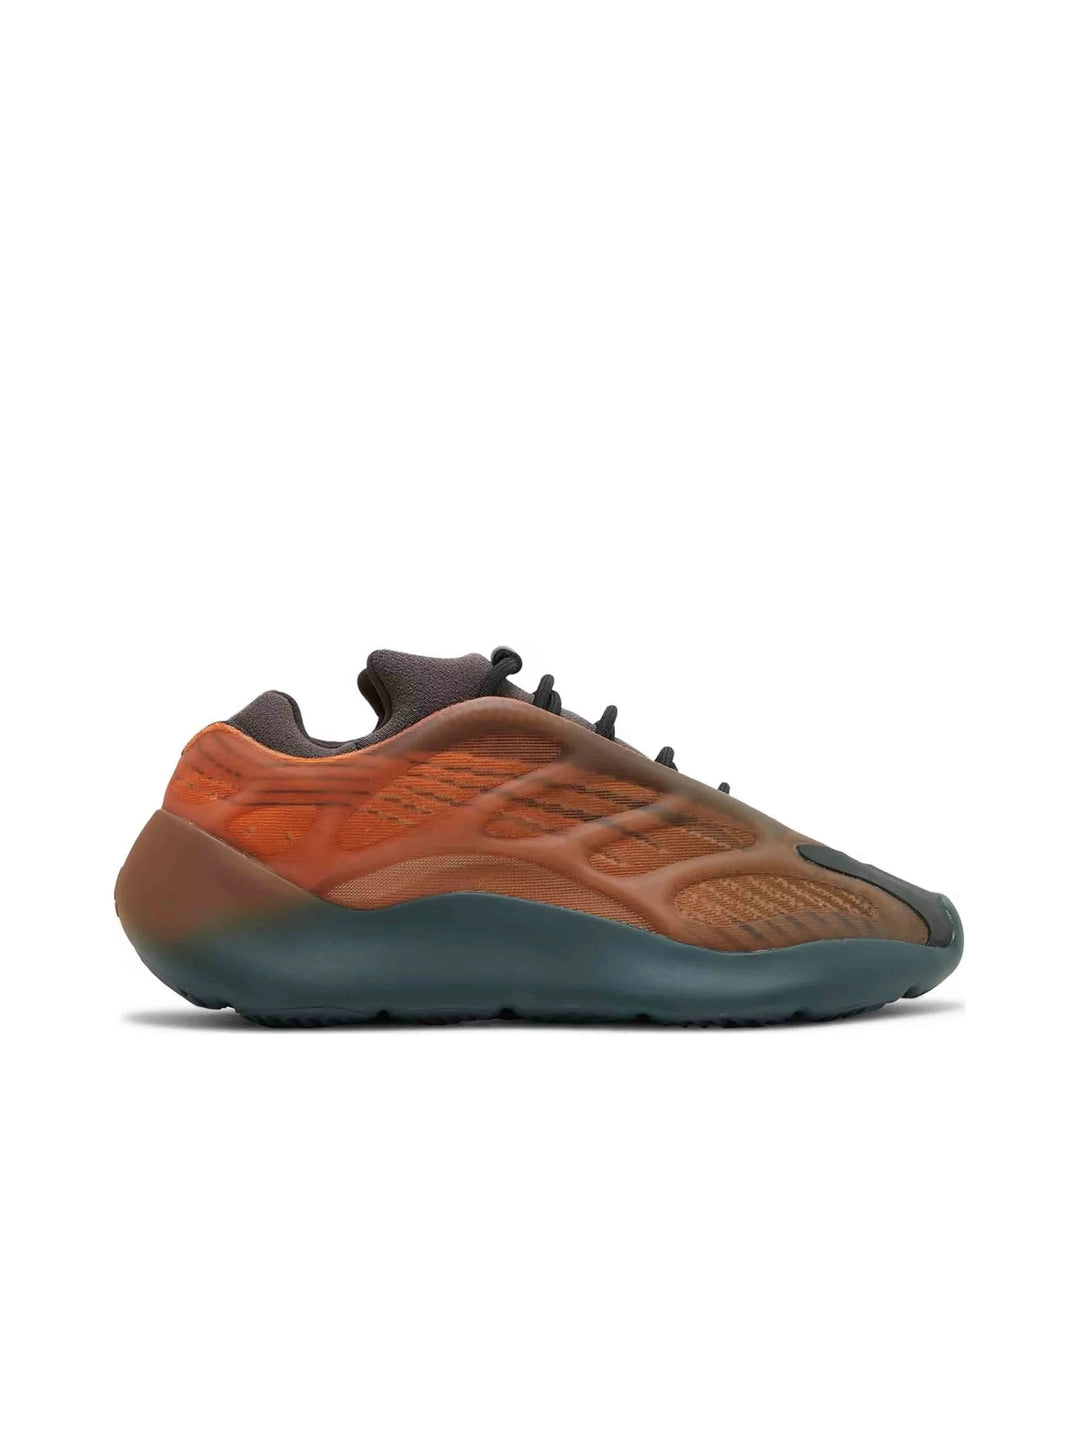 adidas Yeezy 700 V3 Copper Fade Prior